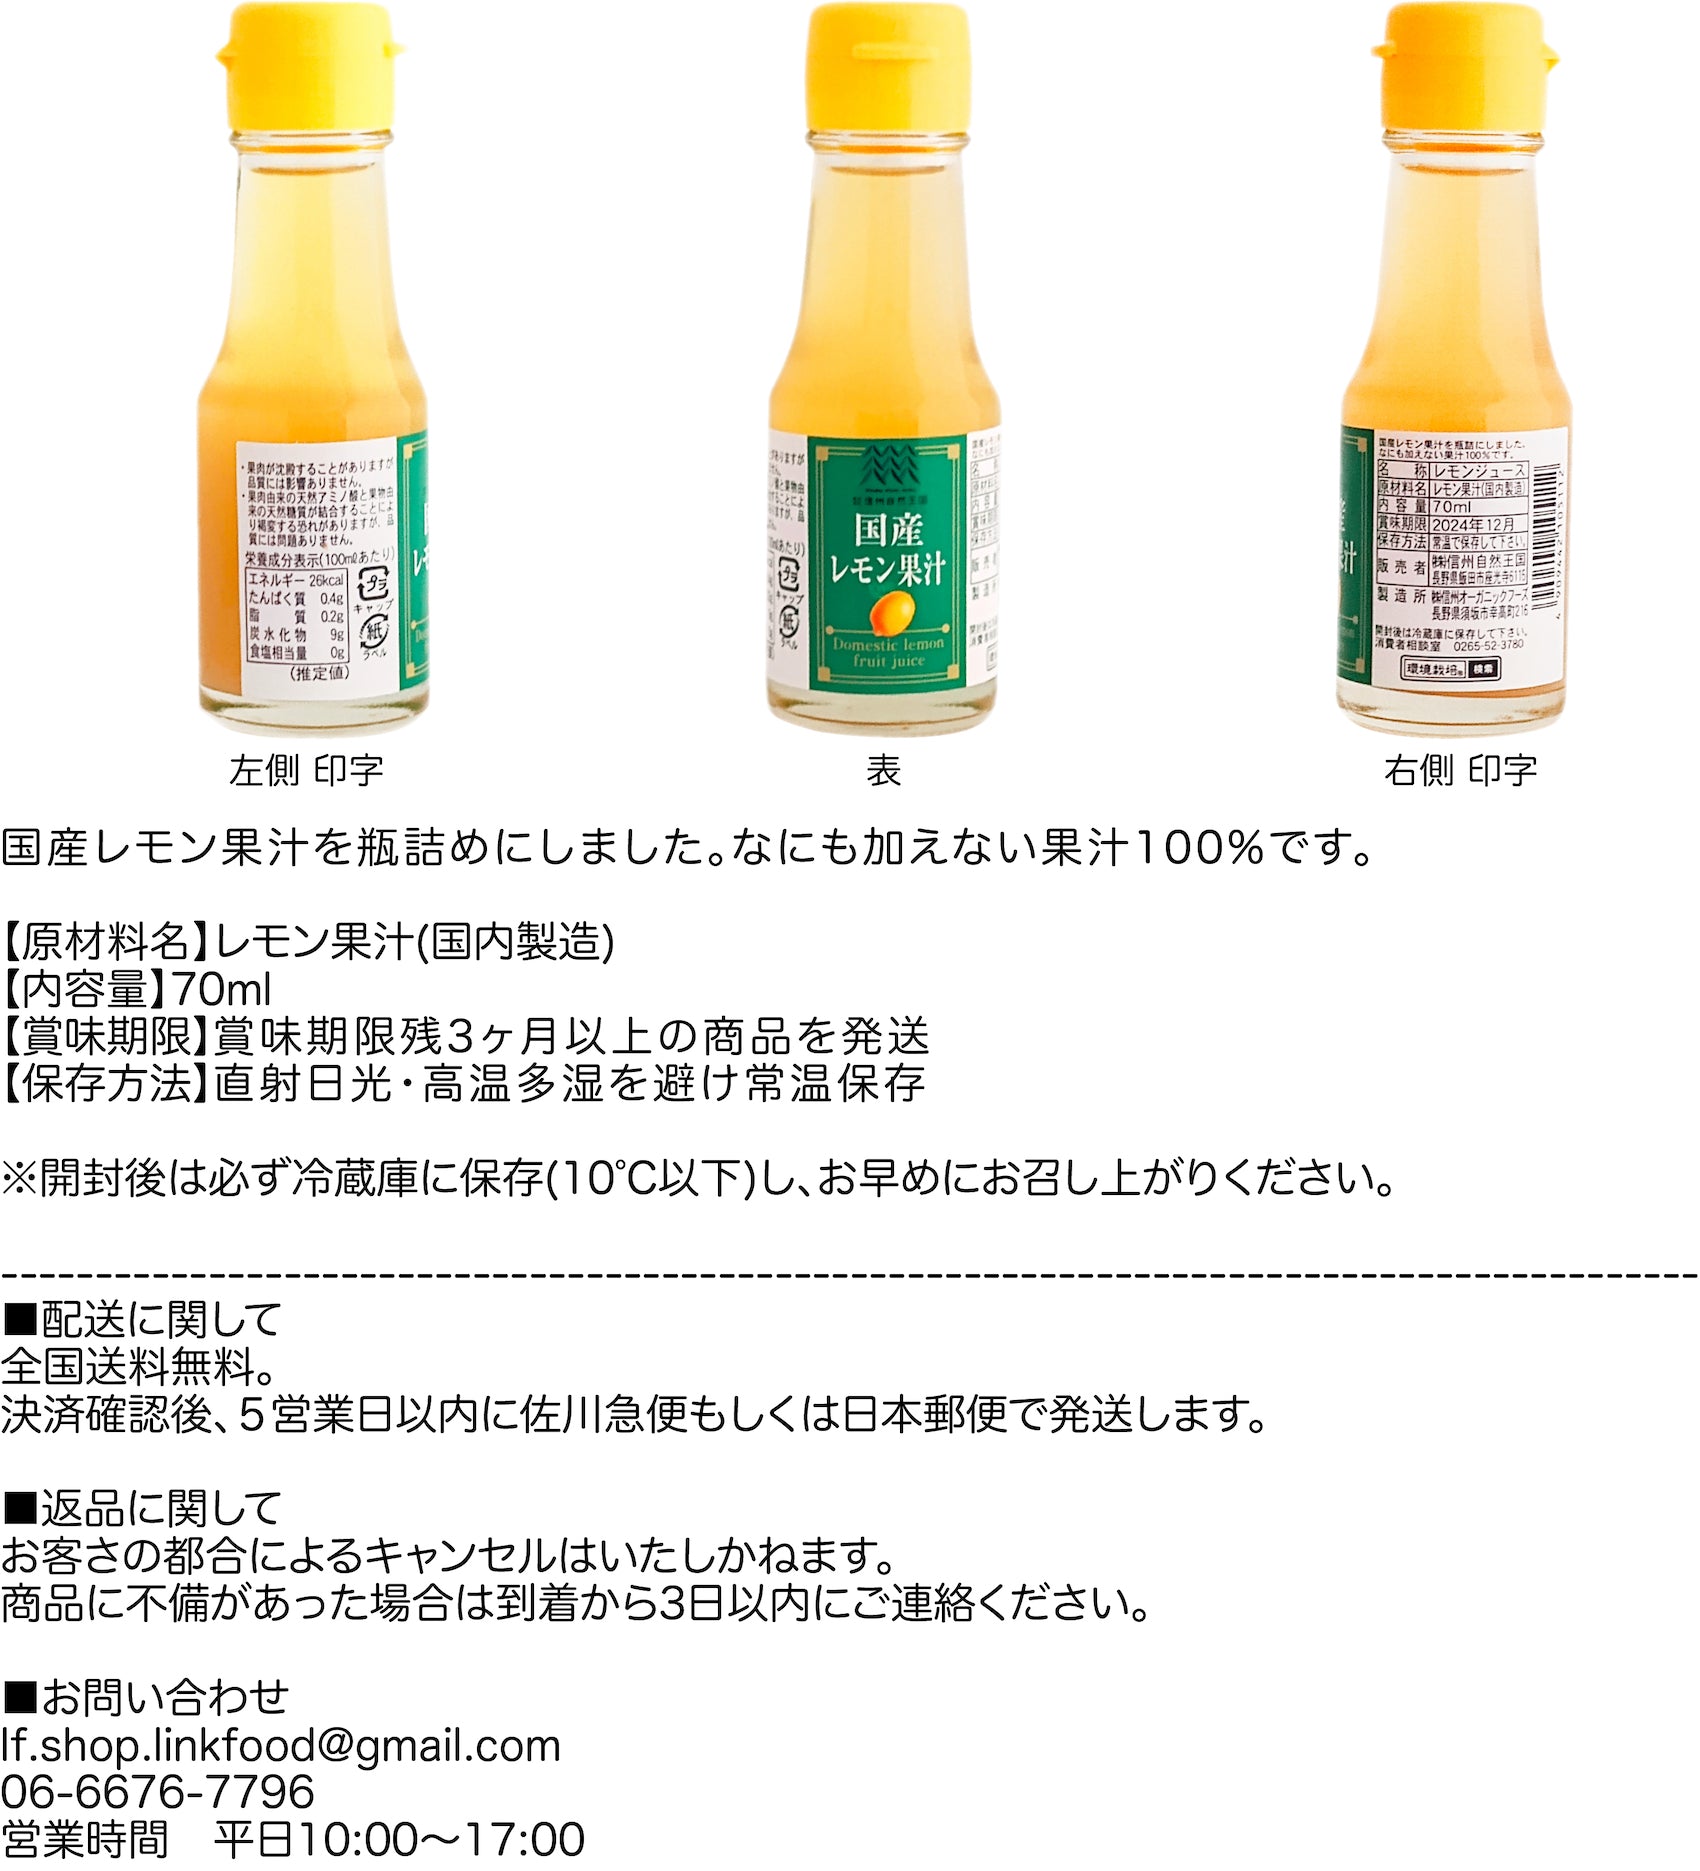 国産レモン果汁お買い物ガイド